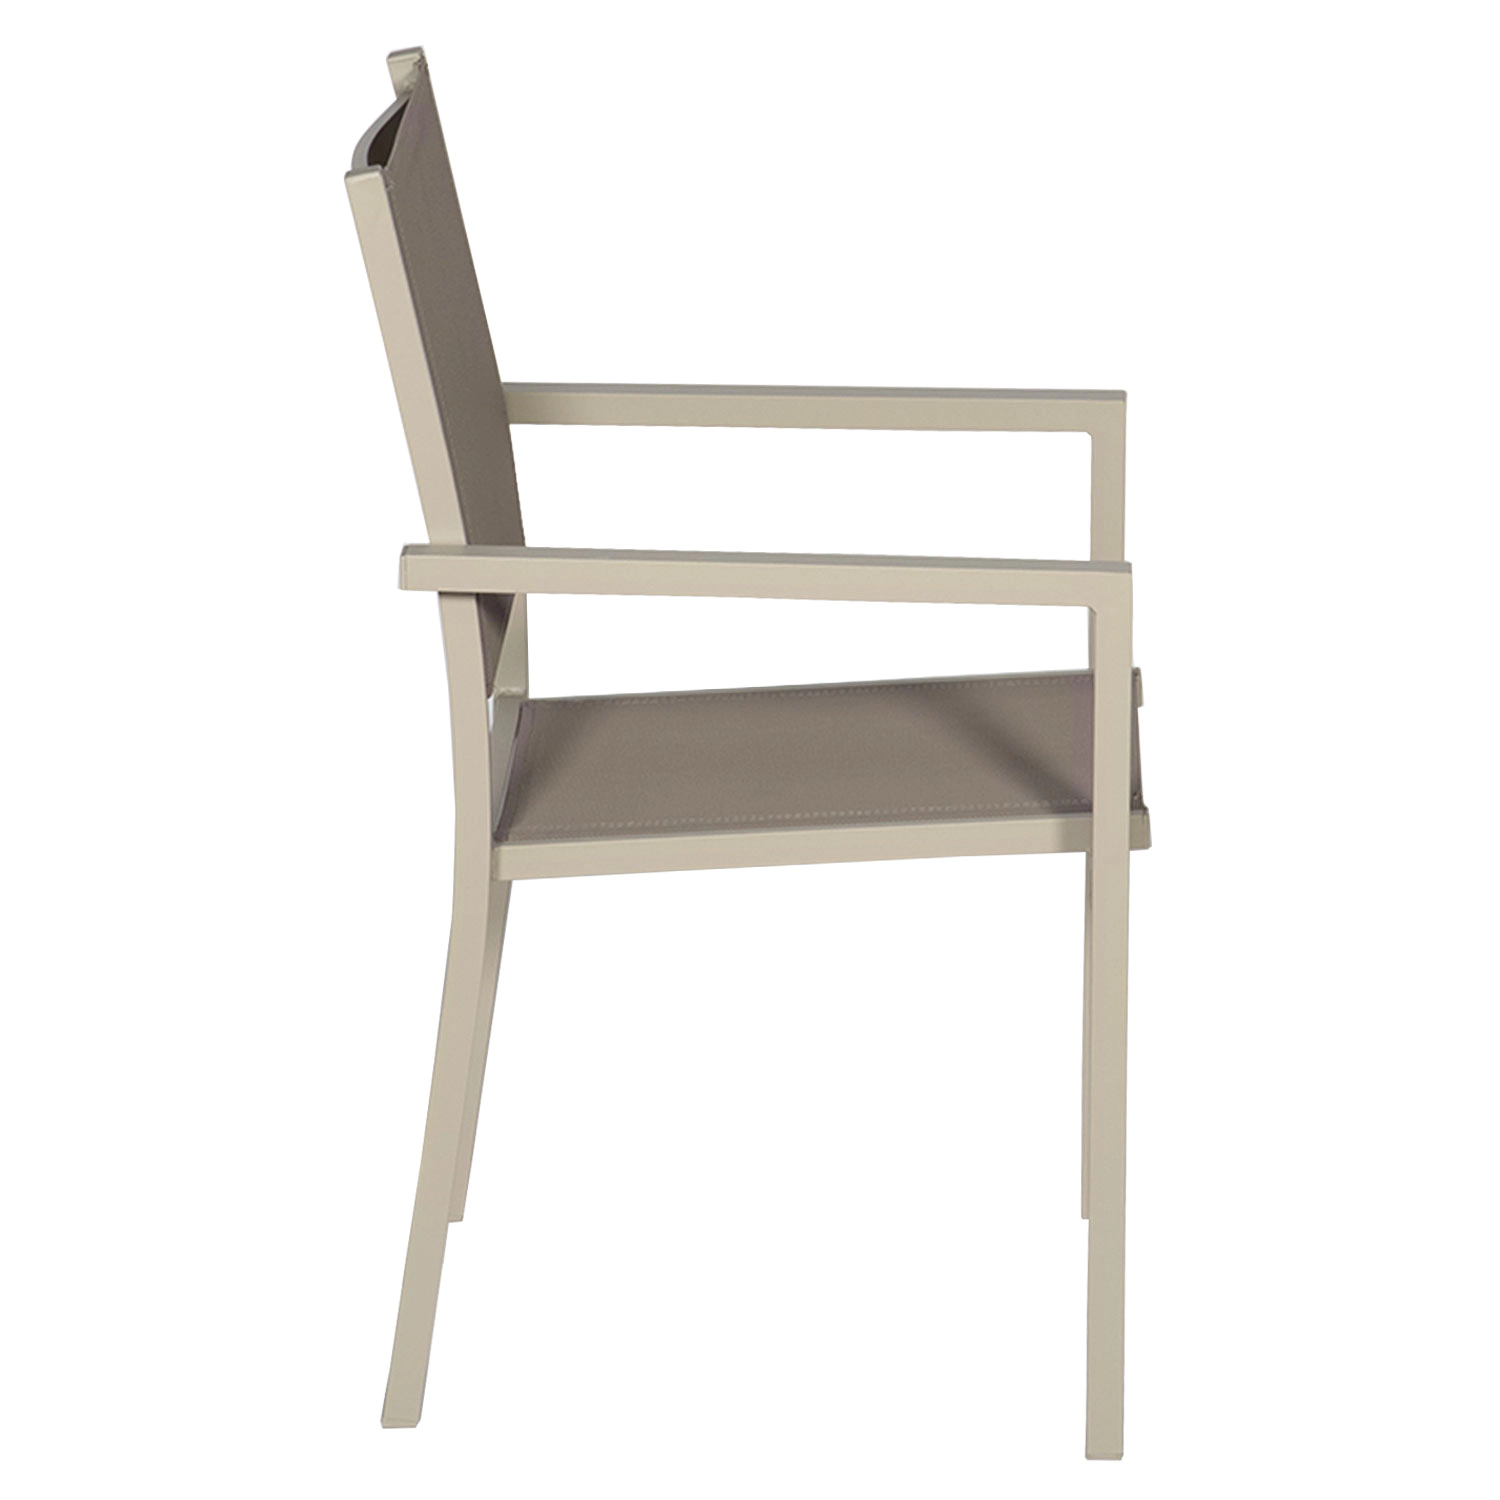 Conjunto de 4 cadeiras de alumínio em tons - textilene taupe